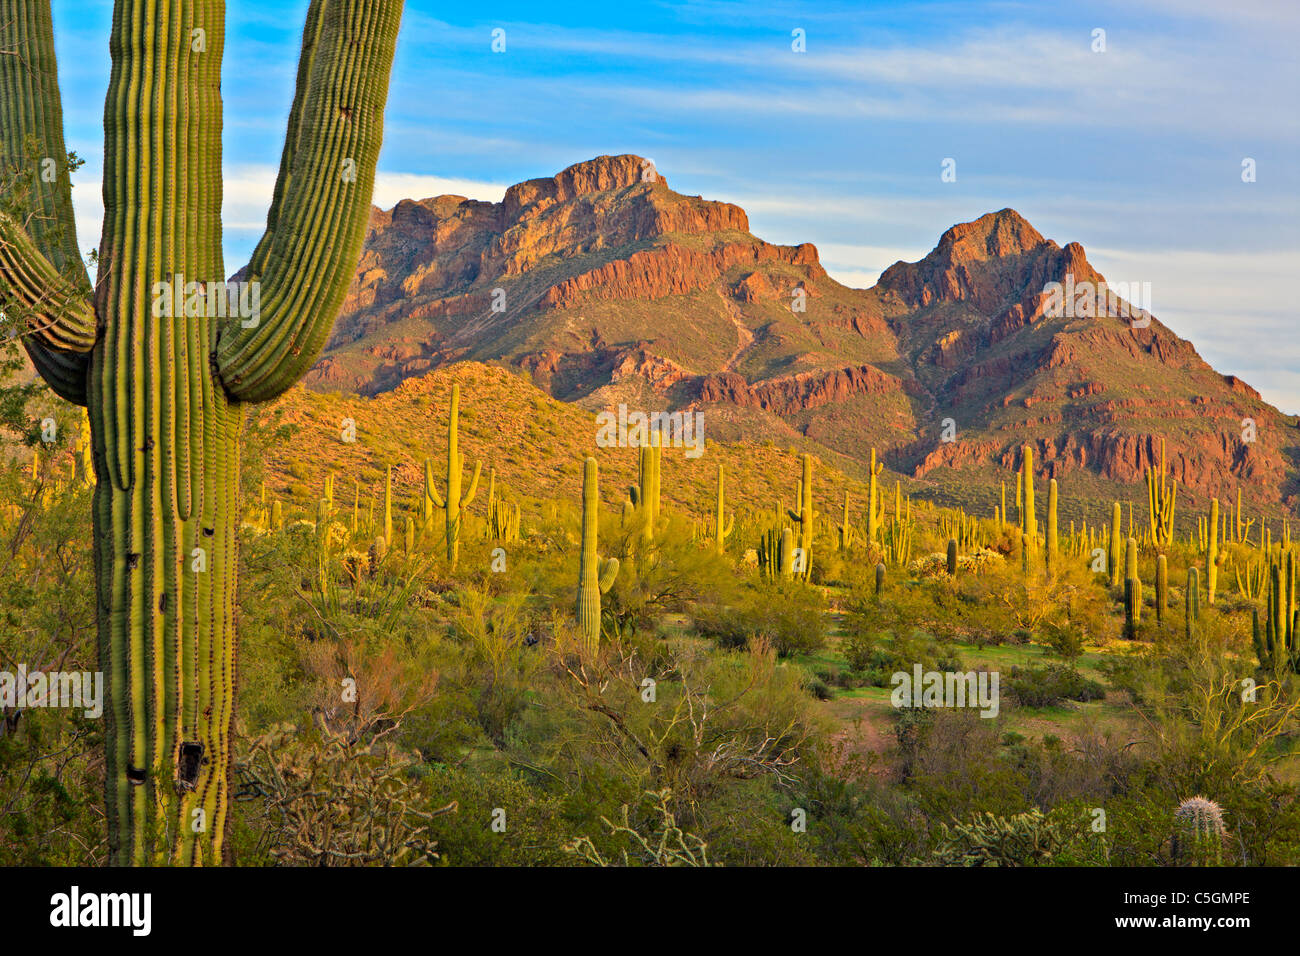 Ajo gamma montagne, cactus Saguaro, molla, organo a canne monumento nazionale, Arizona, Stati Uniti d'America Foto Stock